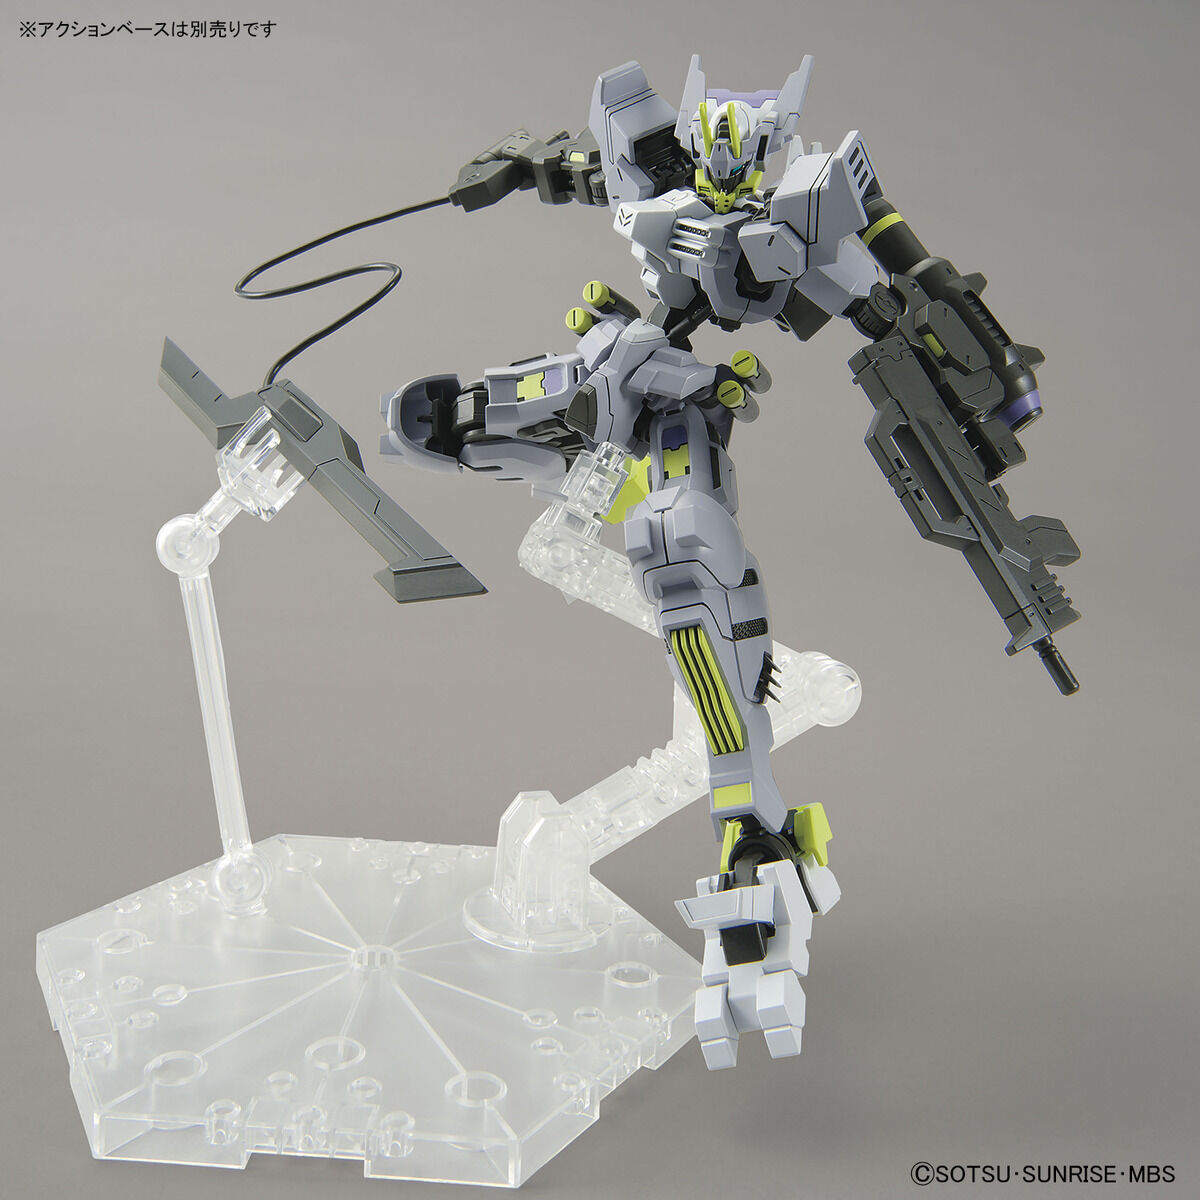 HG 1/144 Gundam Asmoday - Glacier Hobbies - Bandai